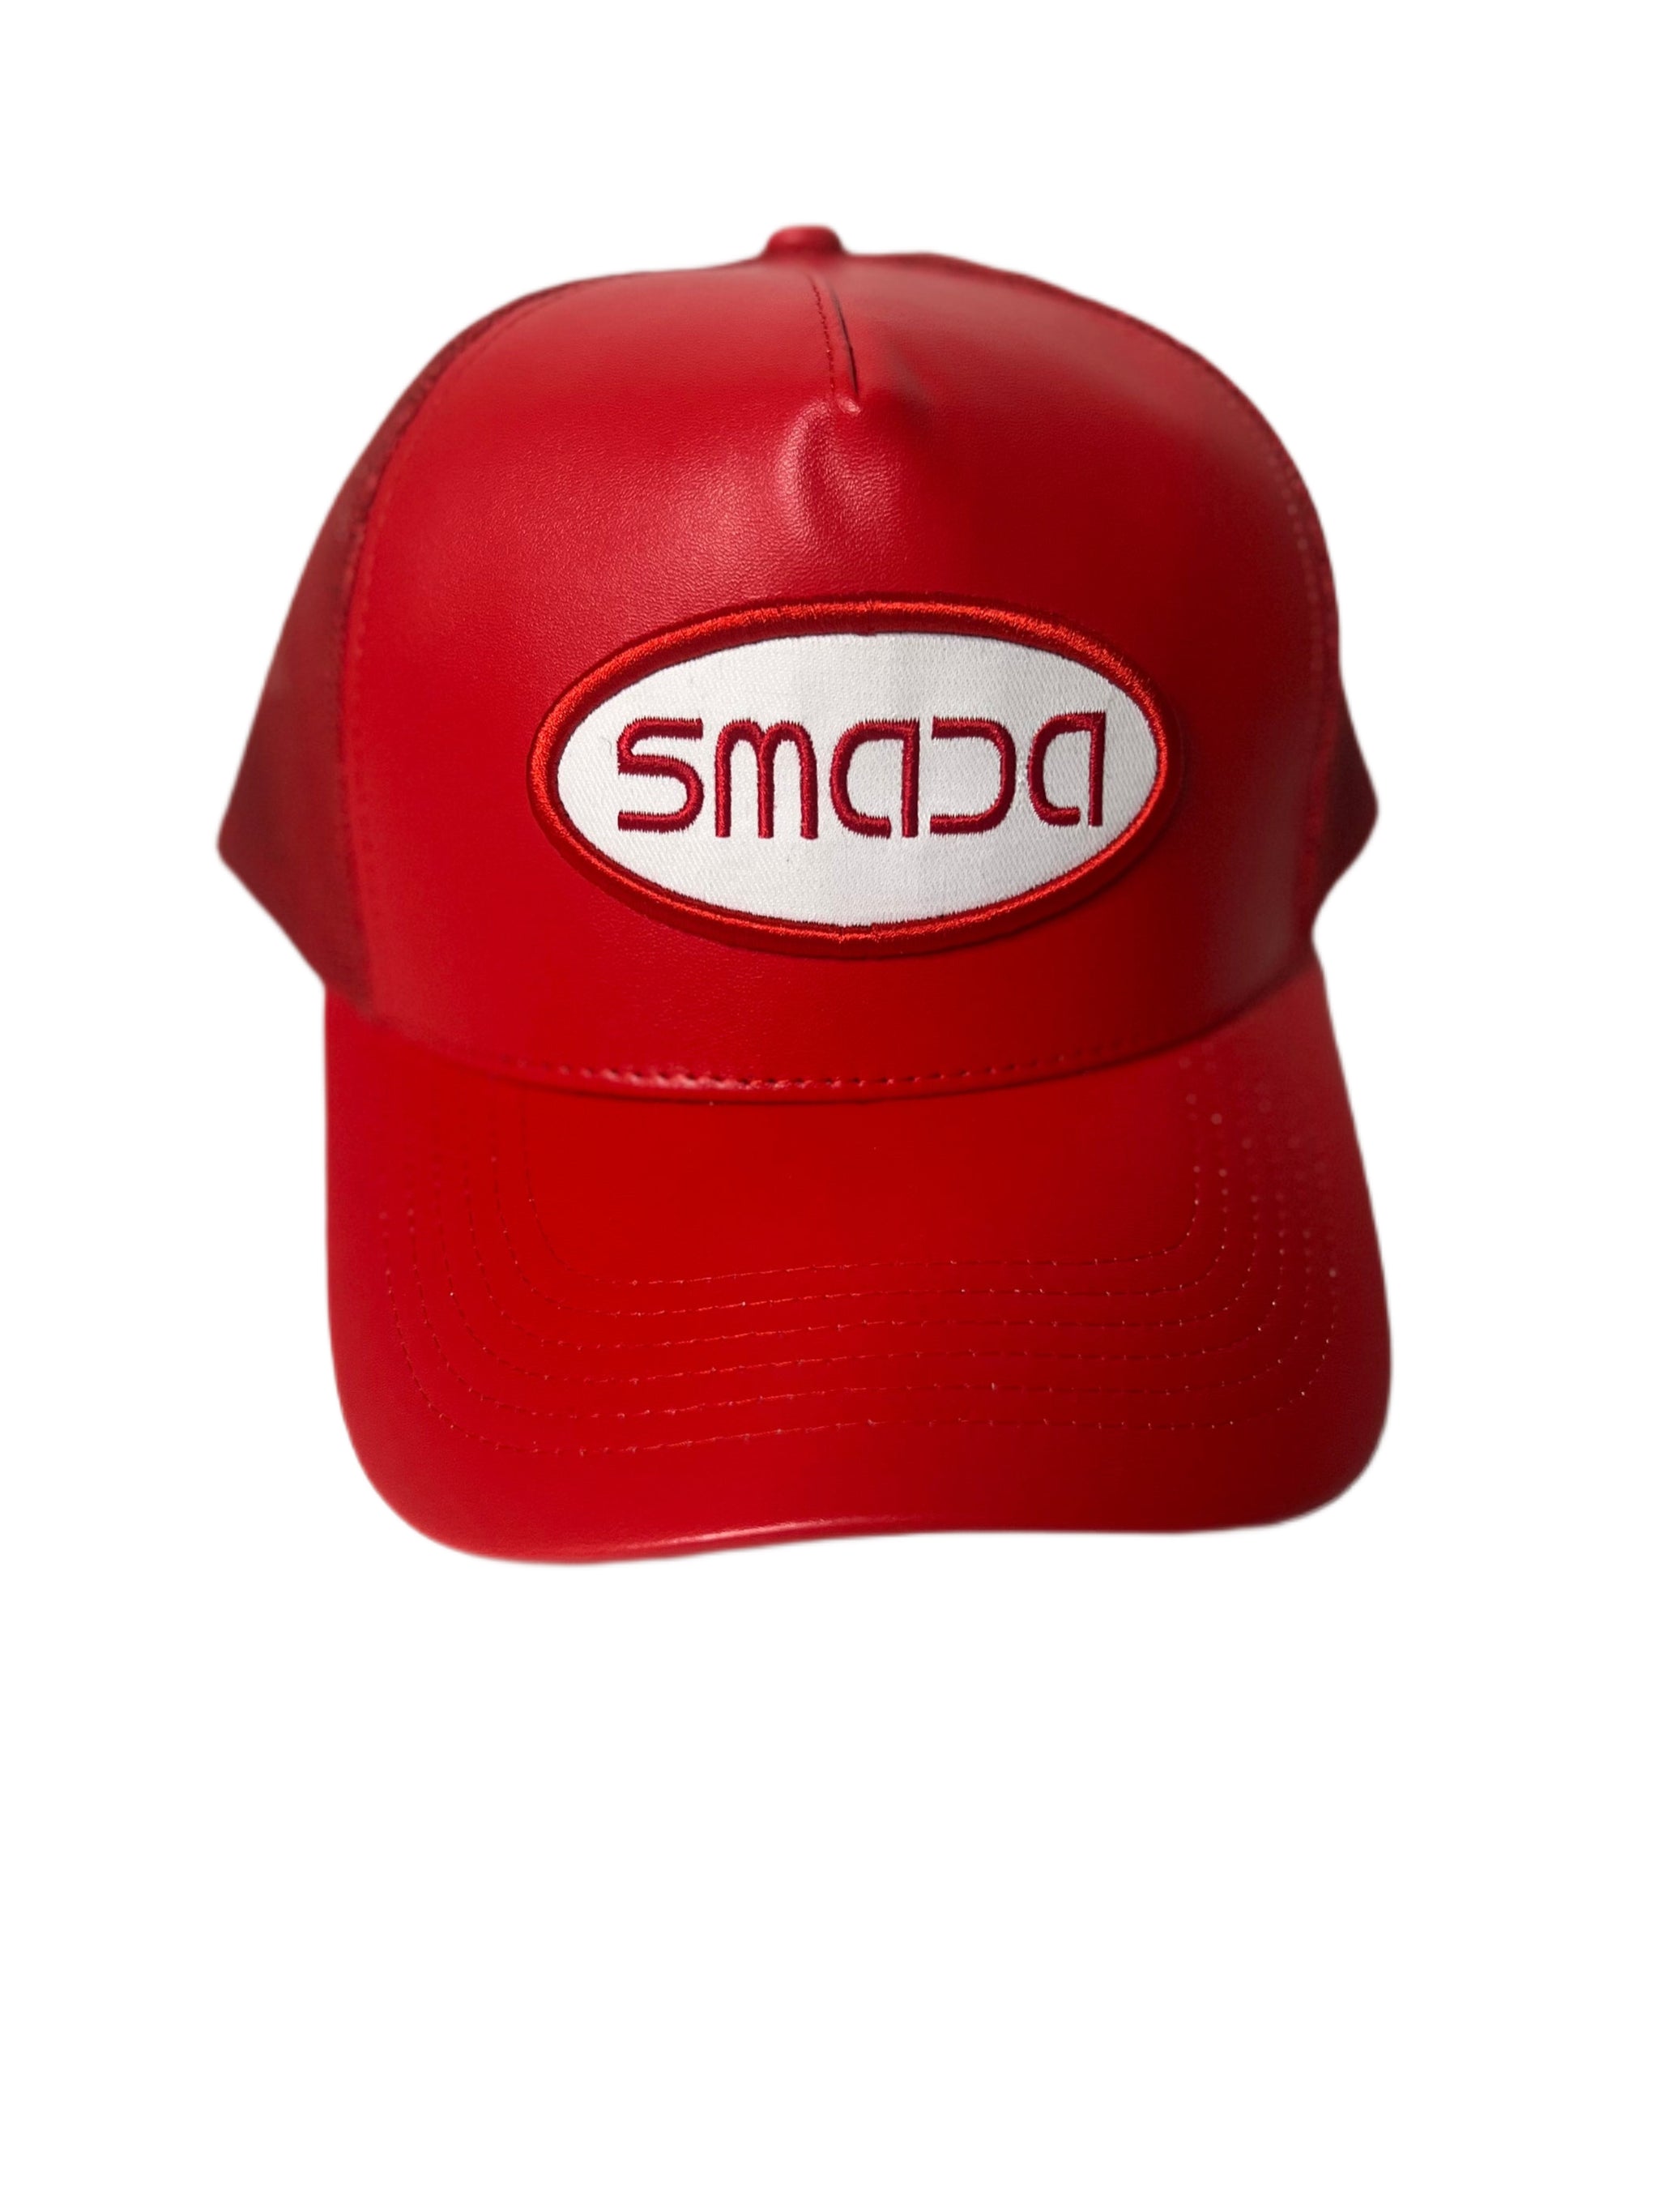 Signature (S)MADA  Hat